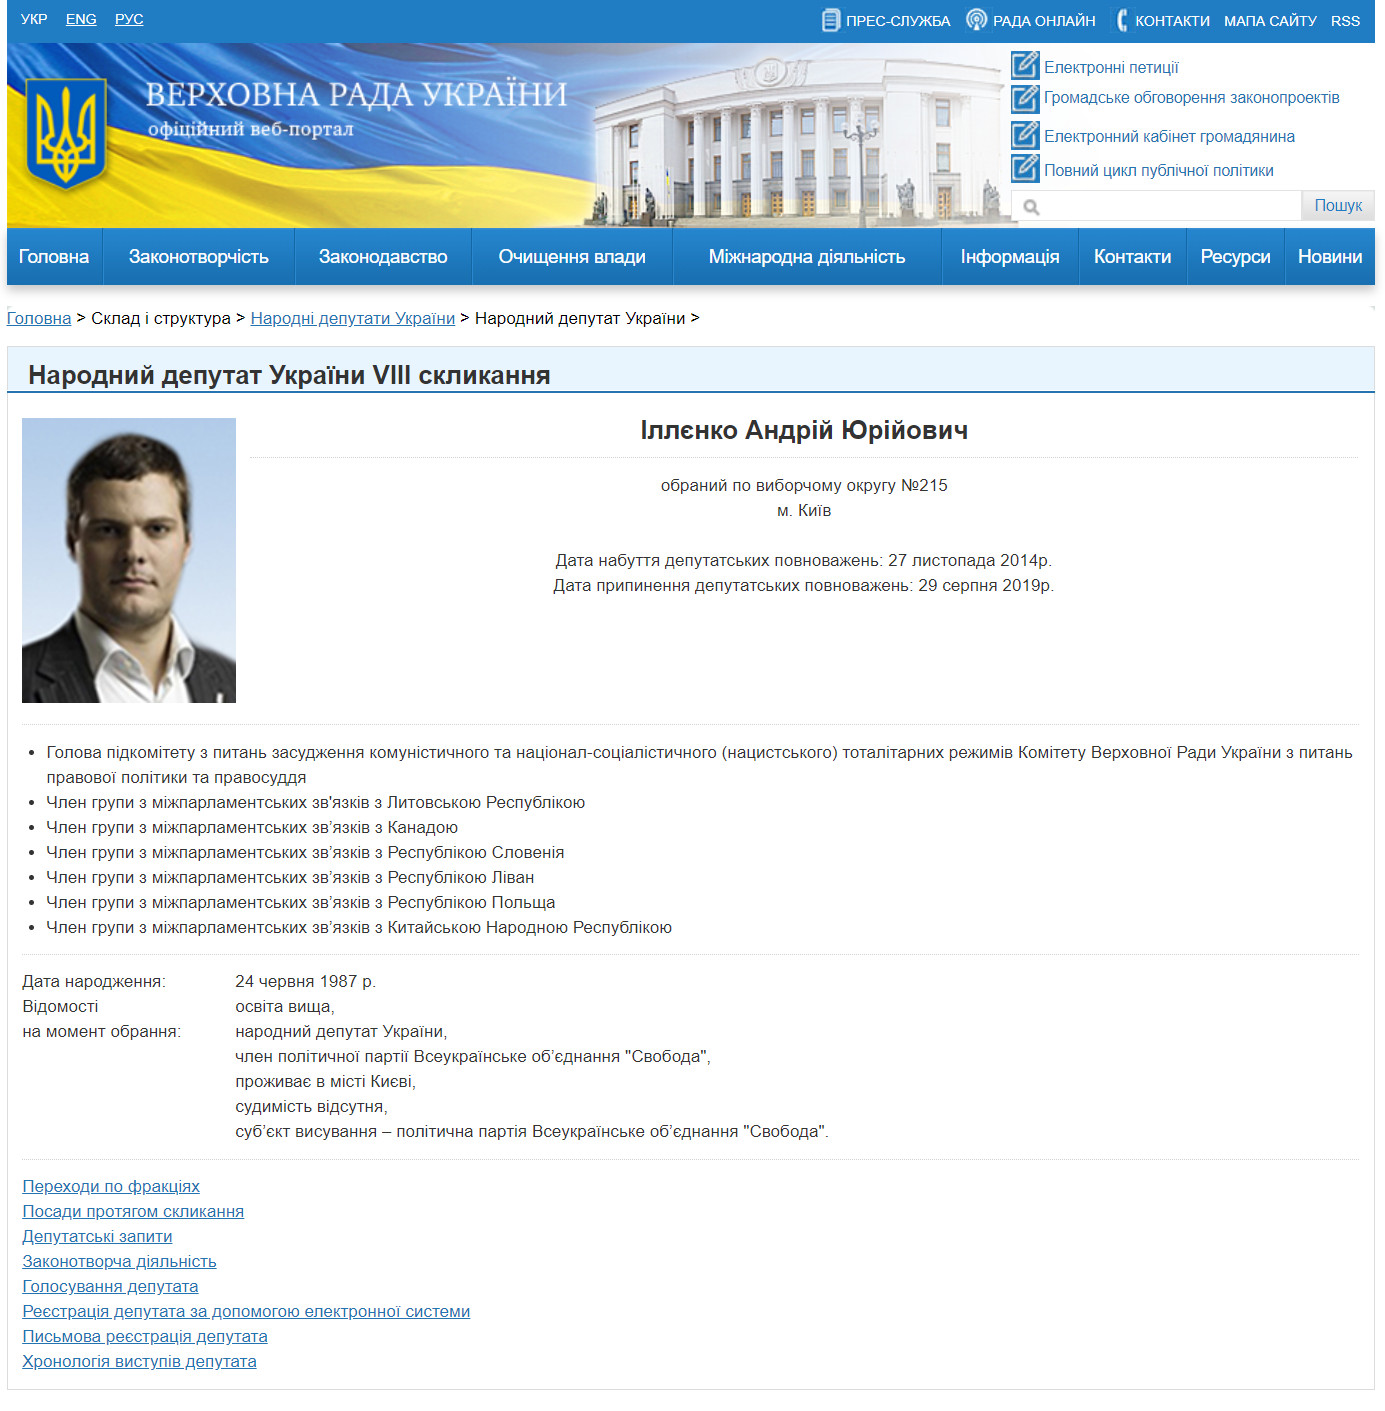 https://itd.rada.gov.ua/mps/info/expage/15837/9